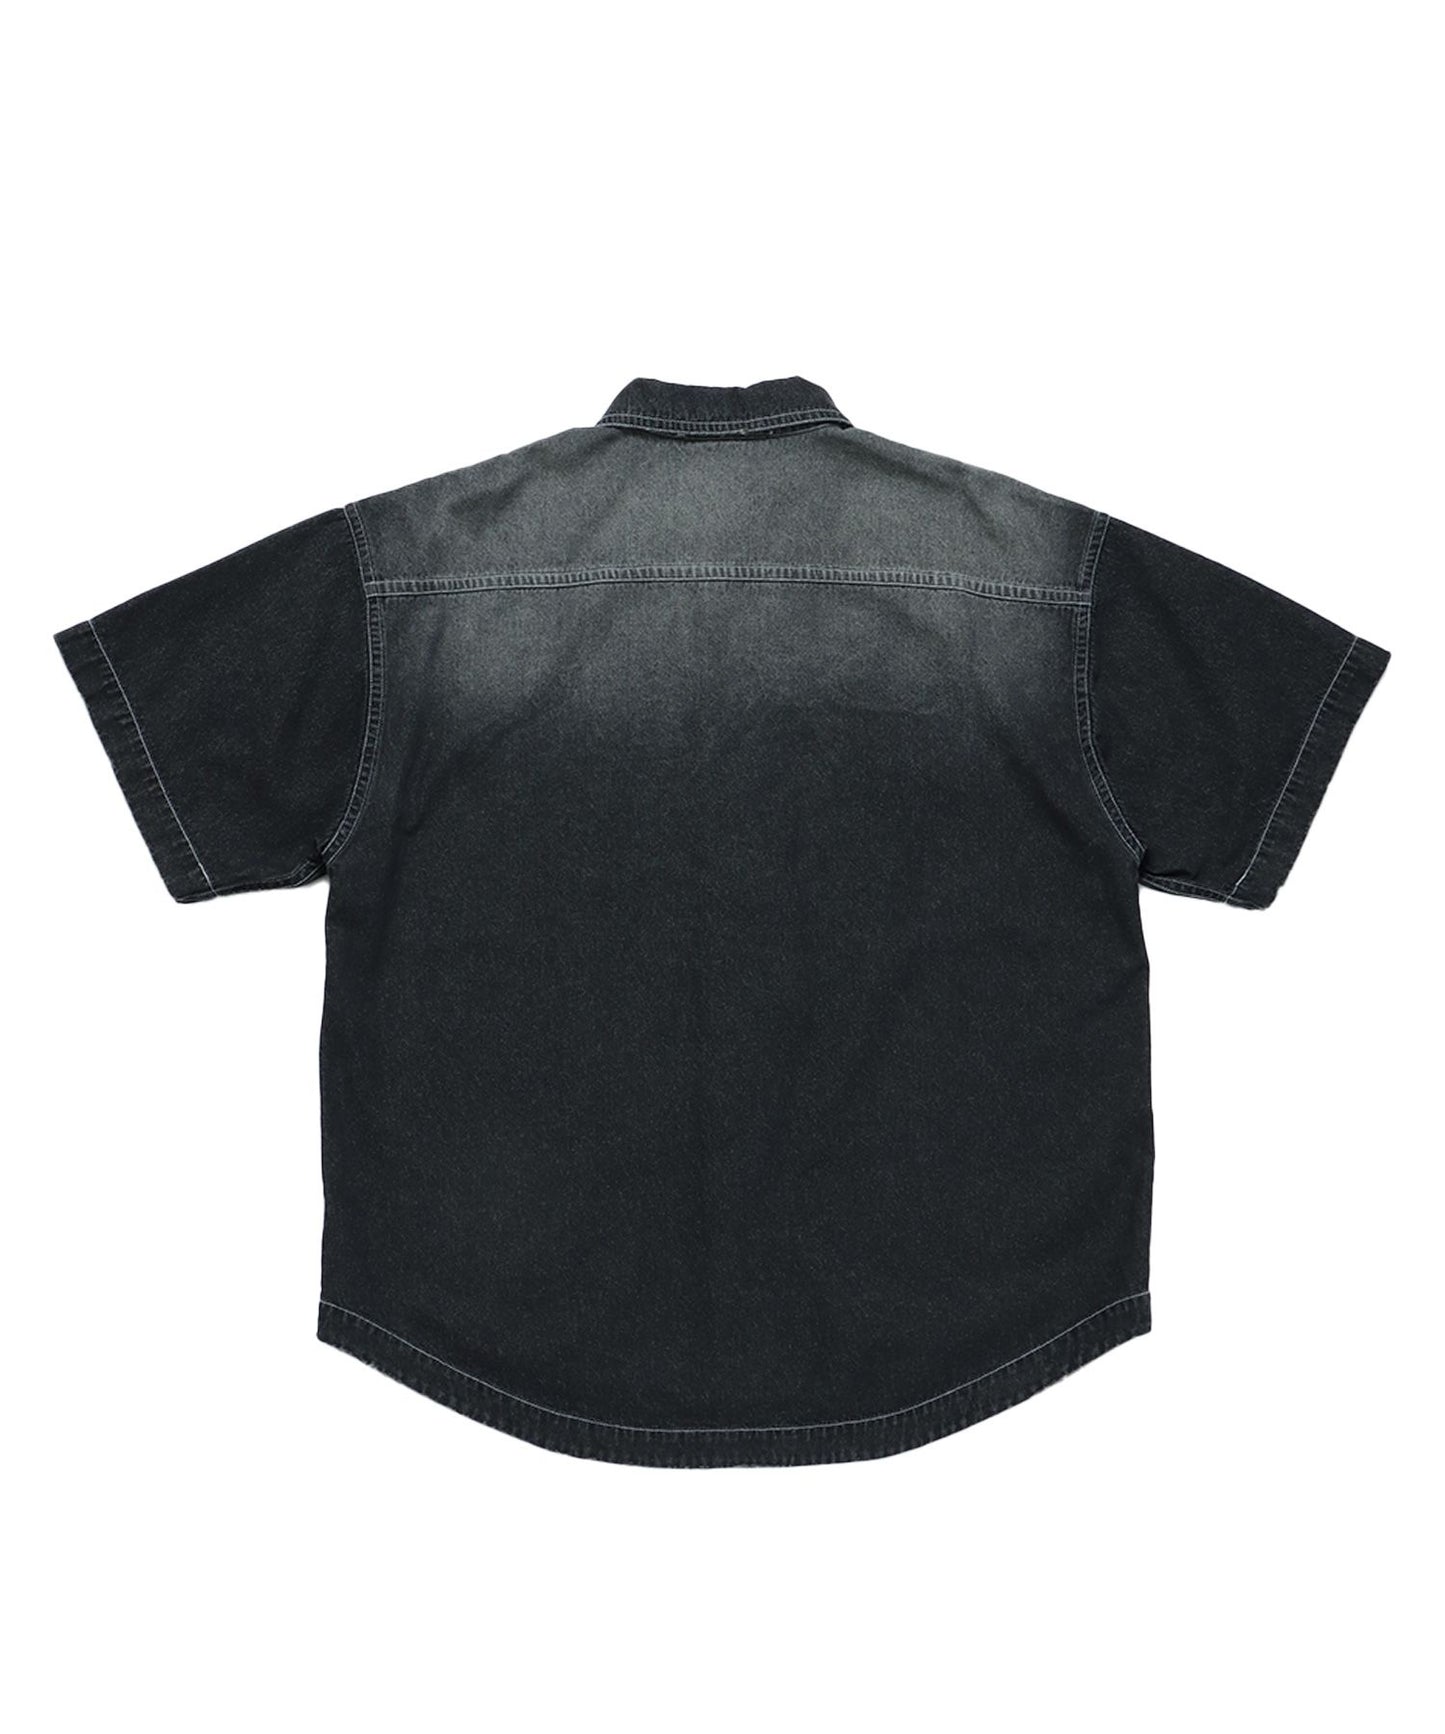 WASHED LIGHT SLUB DENIM S/S SHIRT / 半袖シャツ レギュラーカラー デニム ダメージ ワンポイント 刺繍 オーバーダイ フェード ブラック